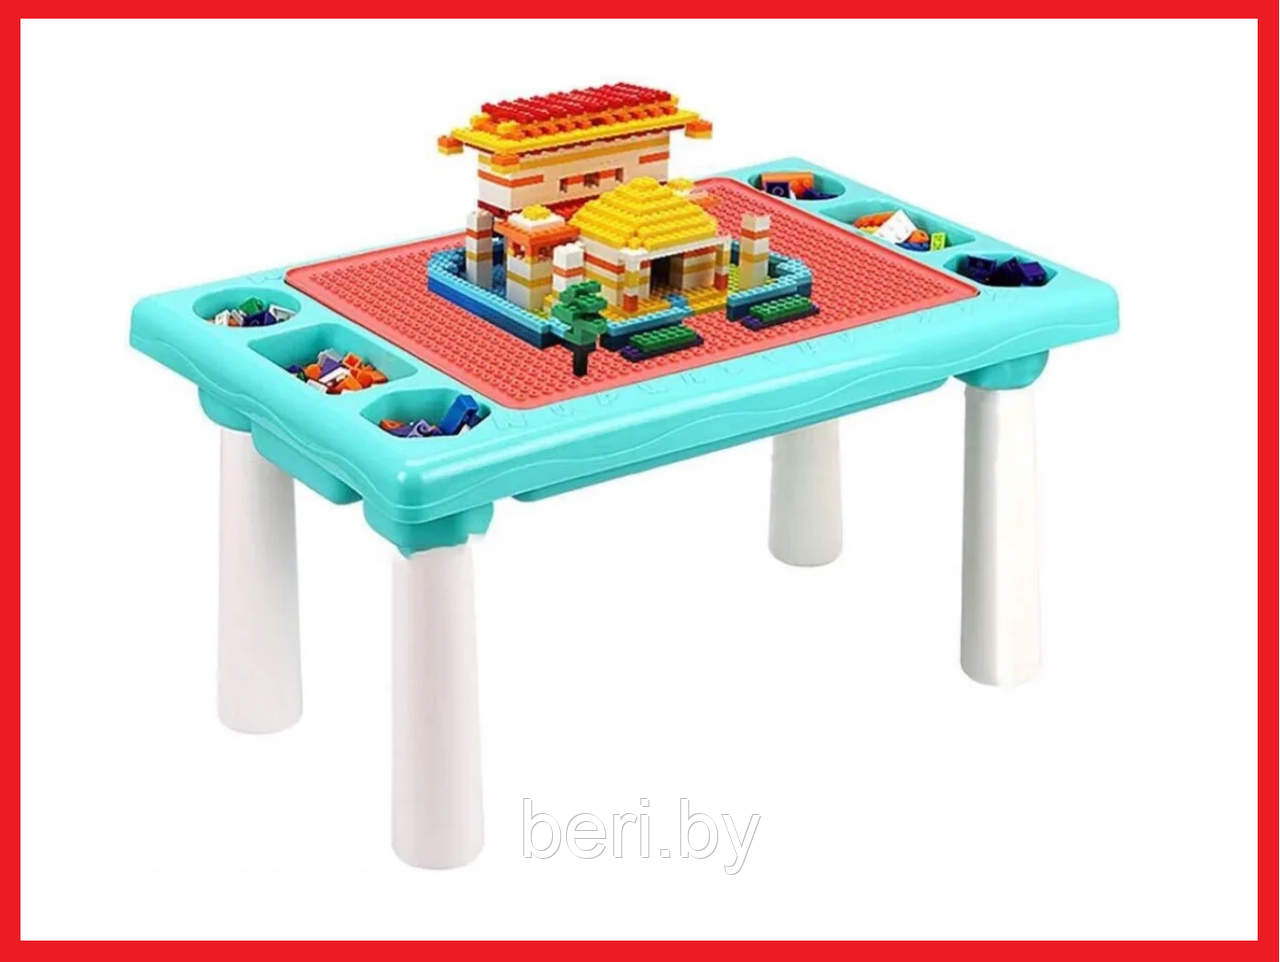 669-15 Стол игровой, для конструктора, песка, воды Столик для сборки конструктора и игры с кинетическим песком